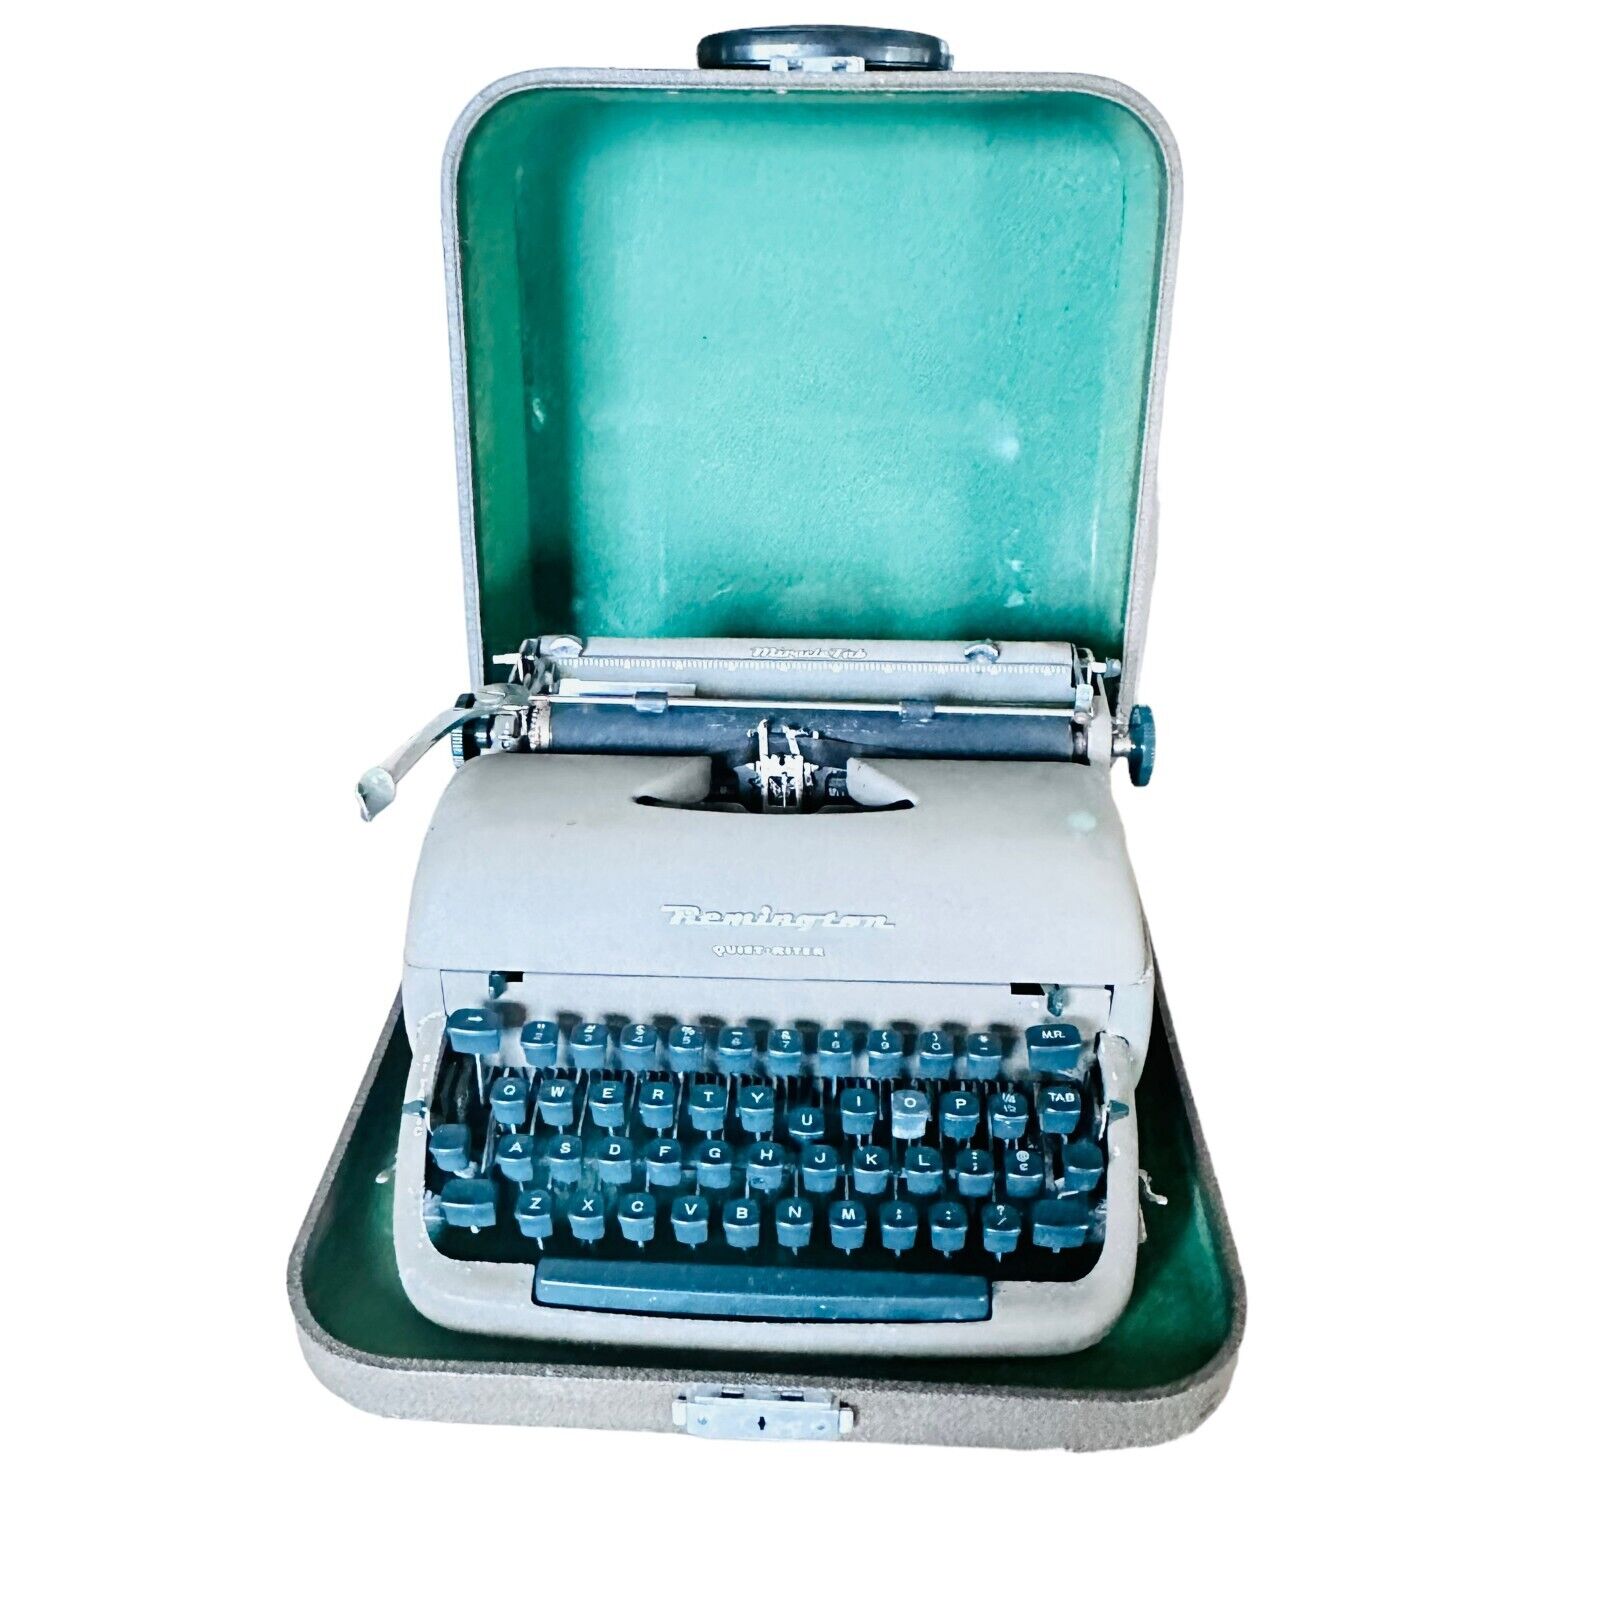 Vtg Remington Quiet-Riter Manual Typewriter Miracle Tab - Green Keys In Case